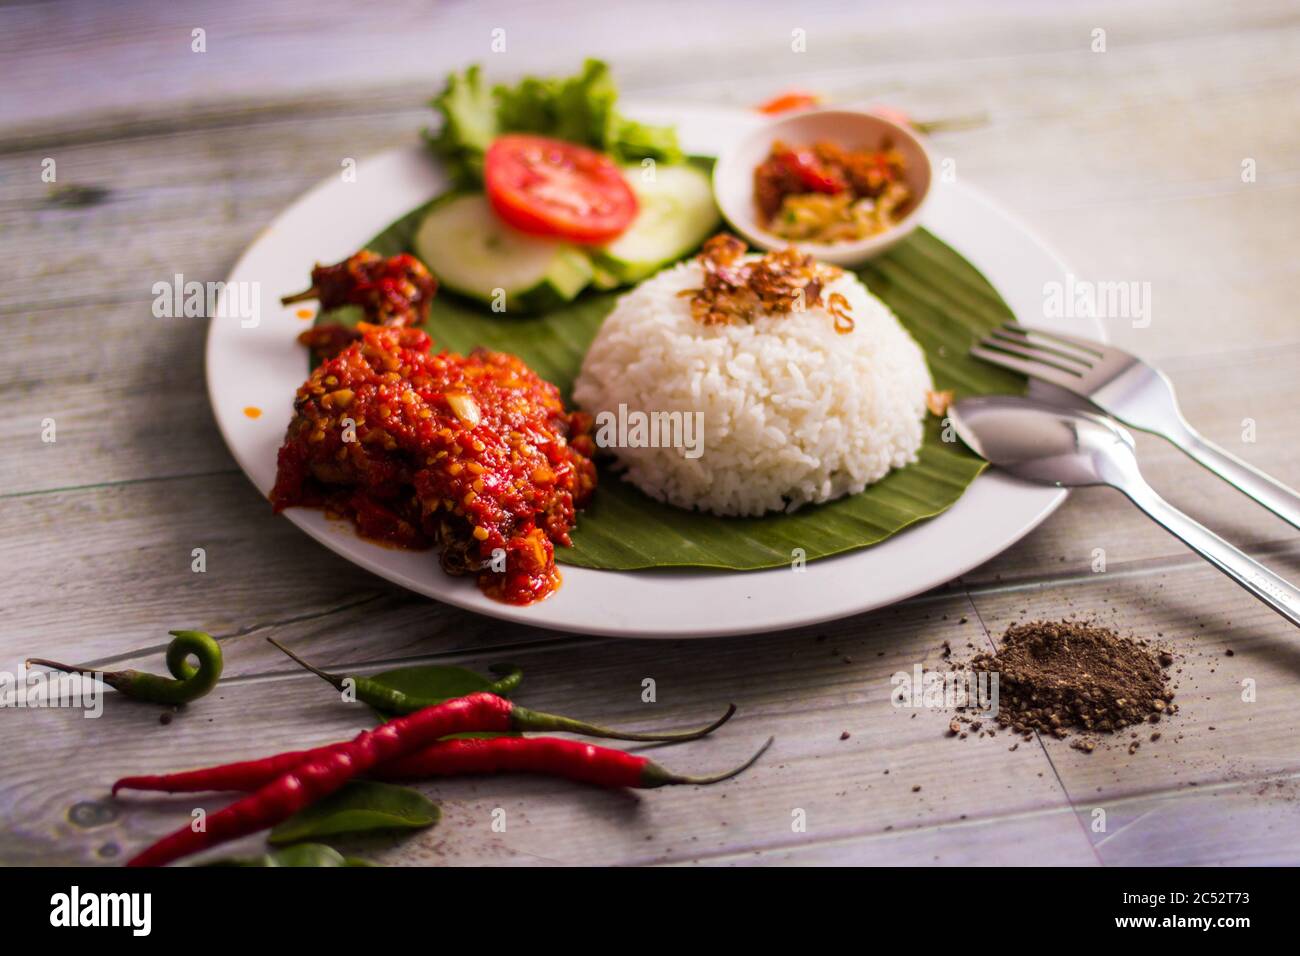 Bakar traditionnel Ayam servi avec du riz et de la sauce Chili, Indonésie Banque D'Images